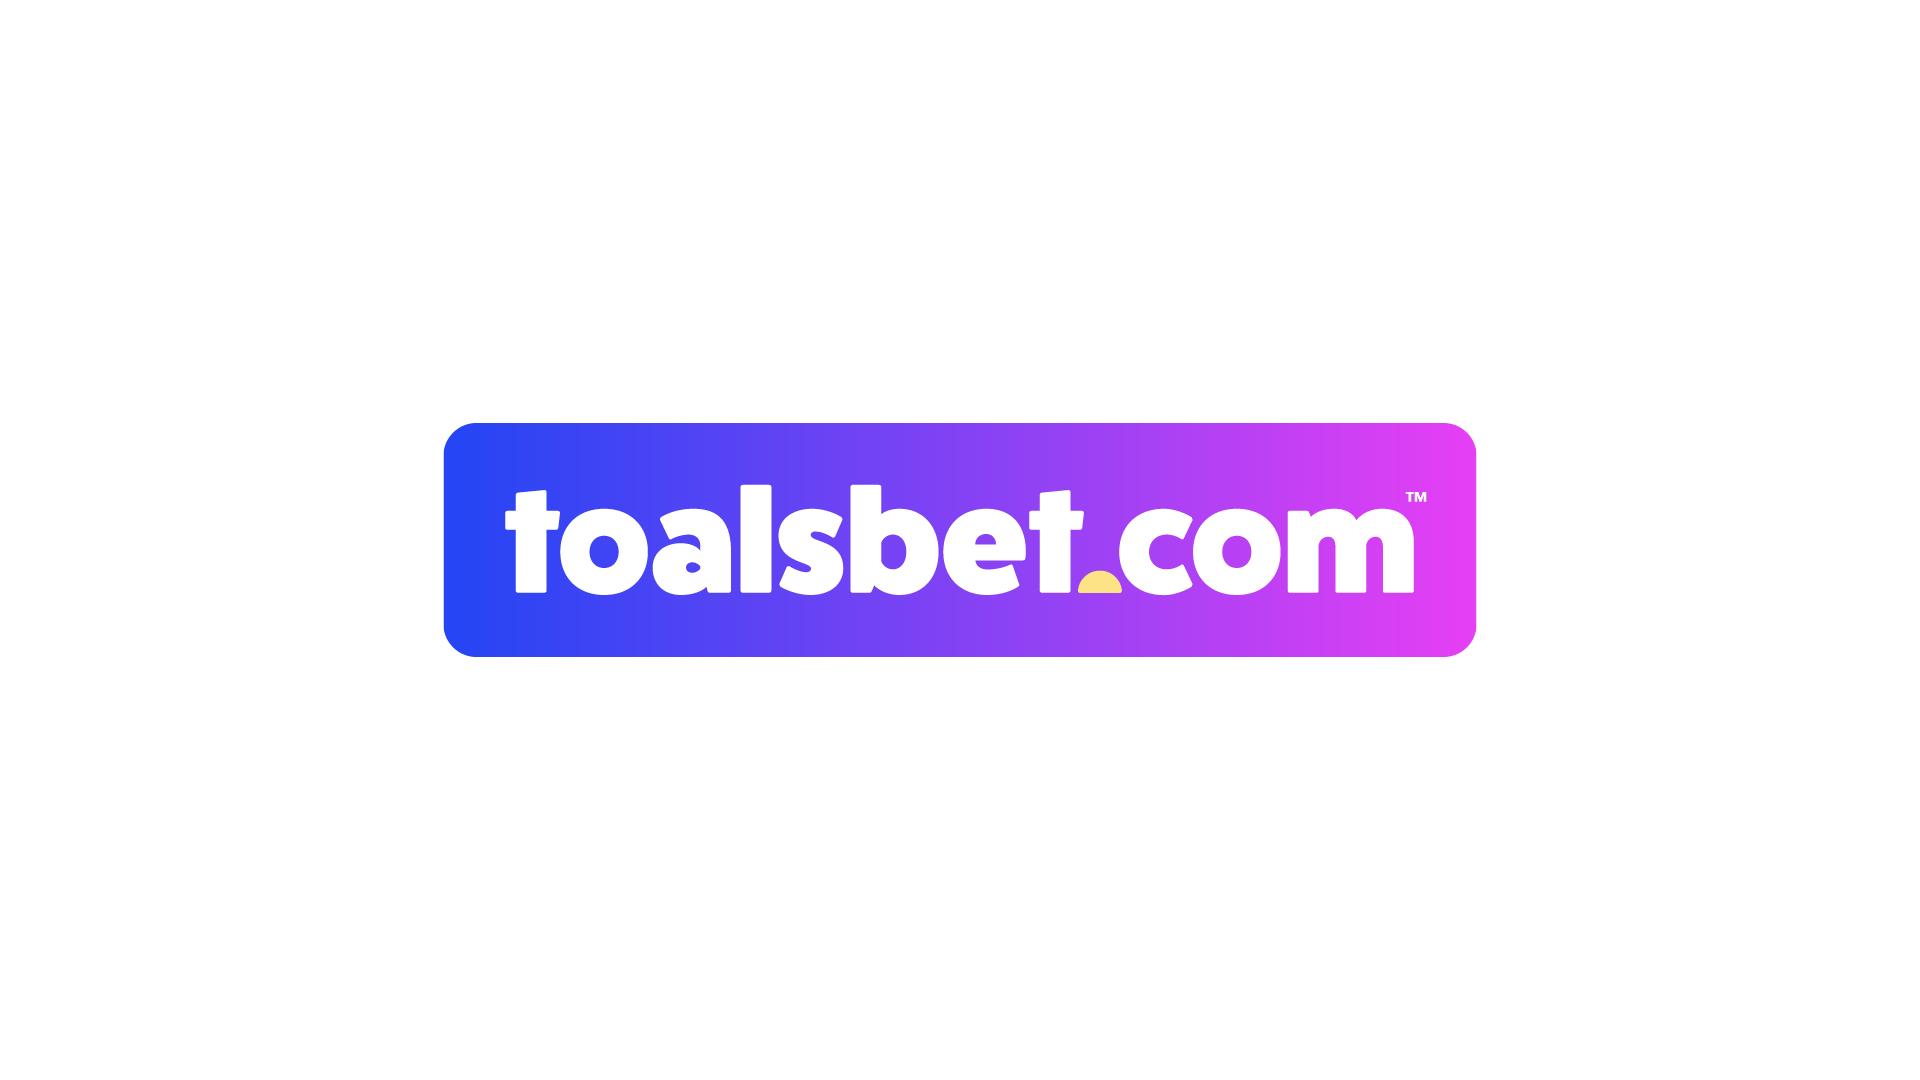 Toalsbet.com - Logo Design